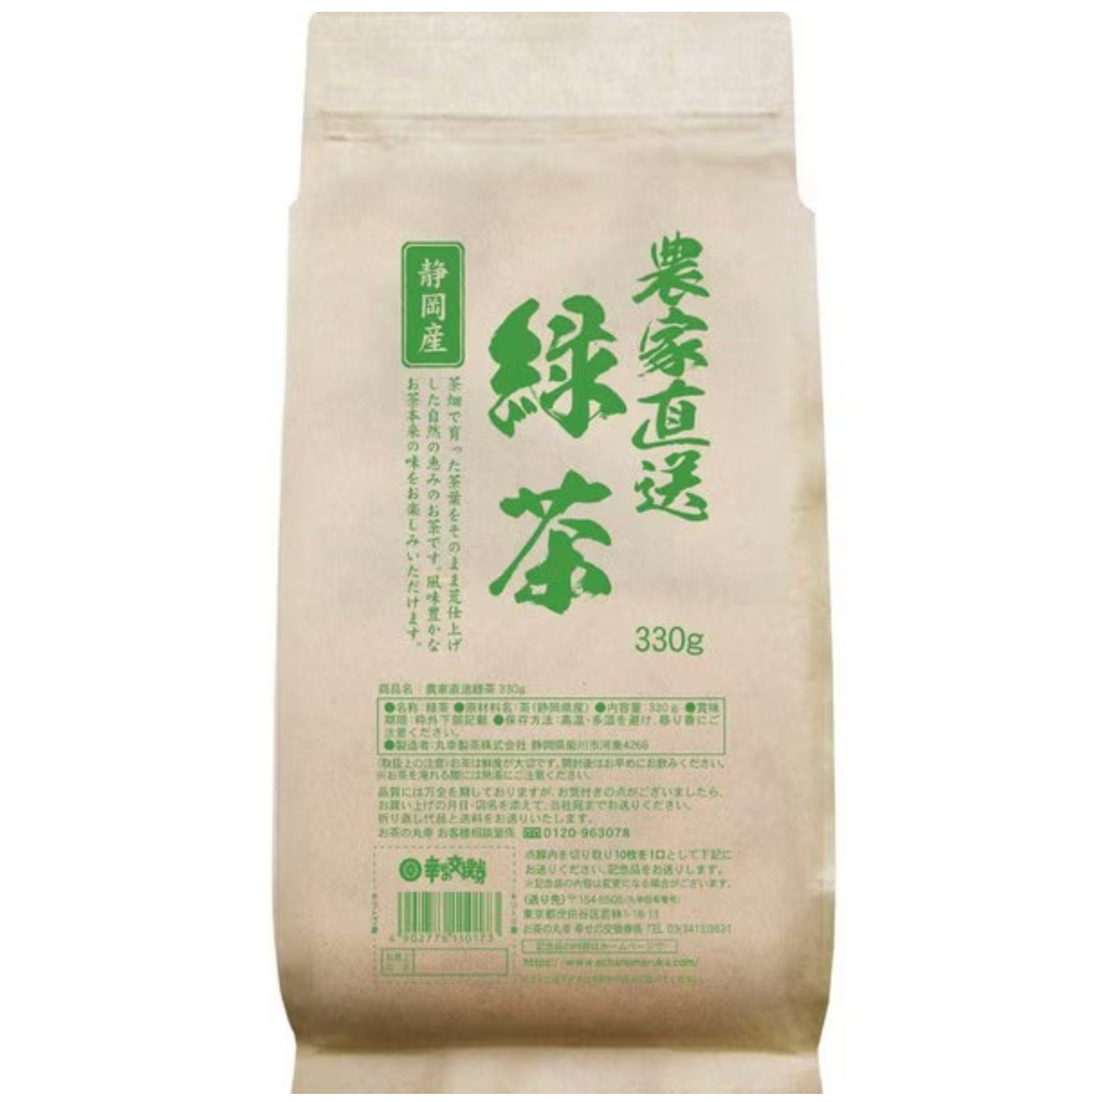 Ochanomaruko Shizuoka green tea delivered directly from farmers 330g